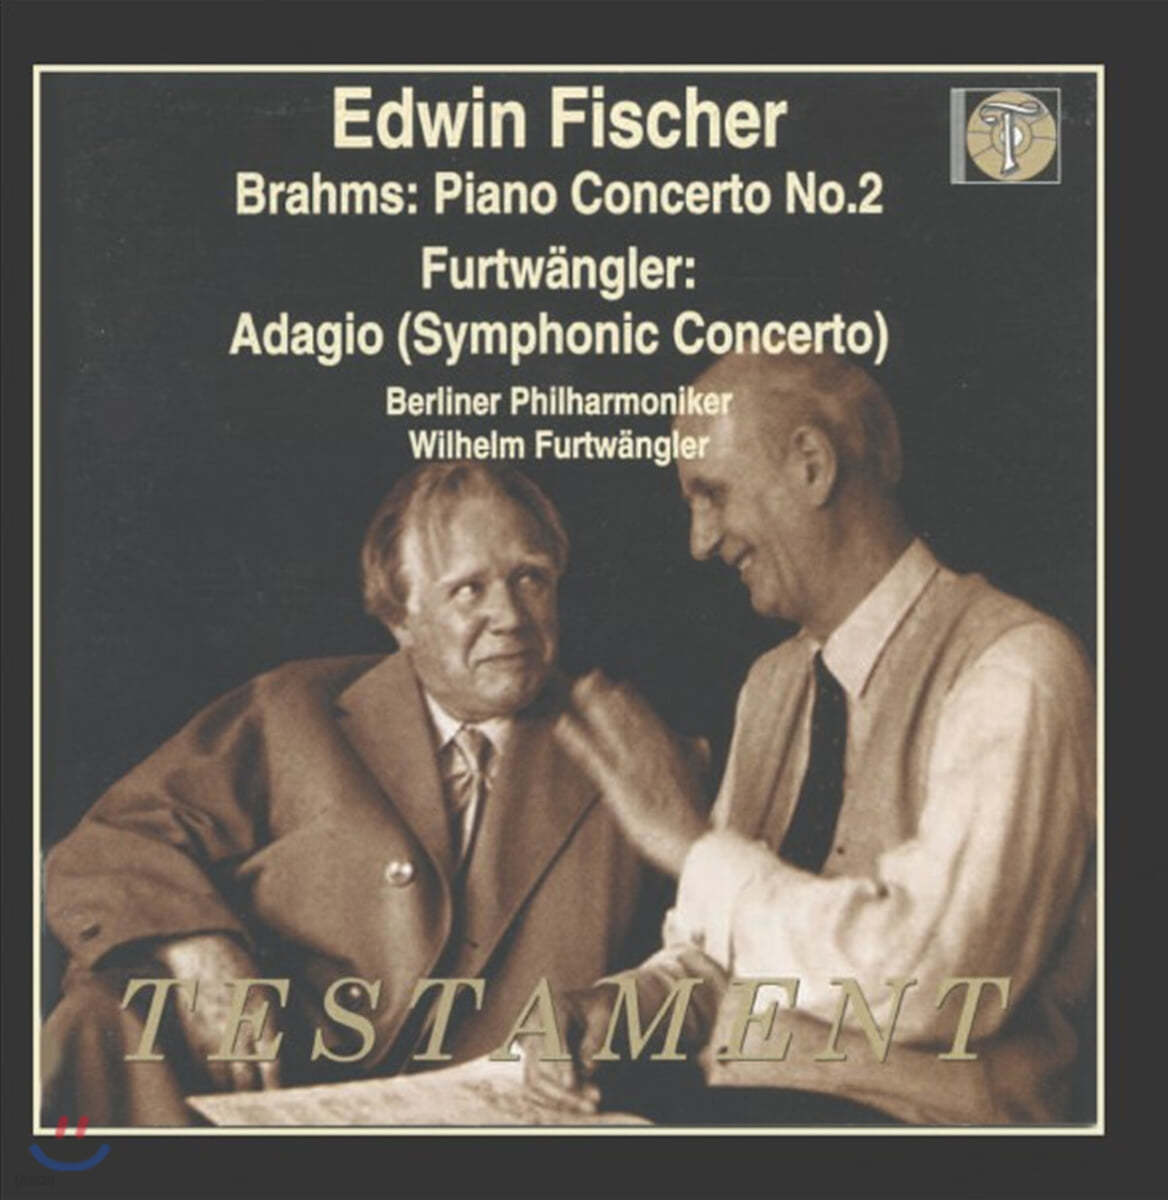 Edwin Fischer 브람스: 피아노 협주곡 2번 / 빌헬름 푸르트뱅글러: 교향적 협주곡 